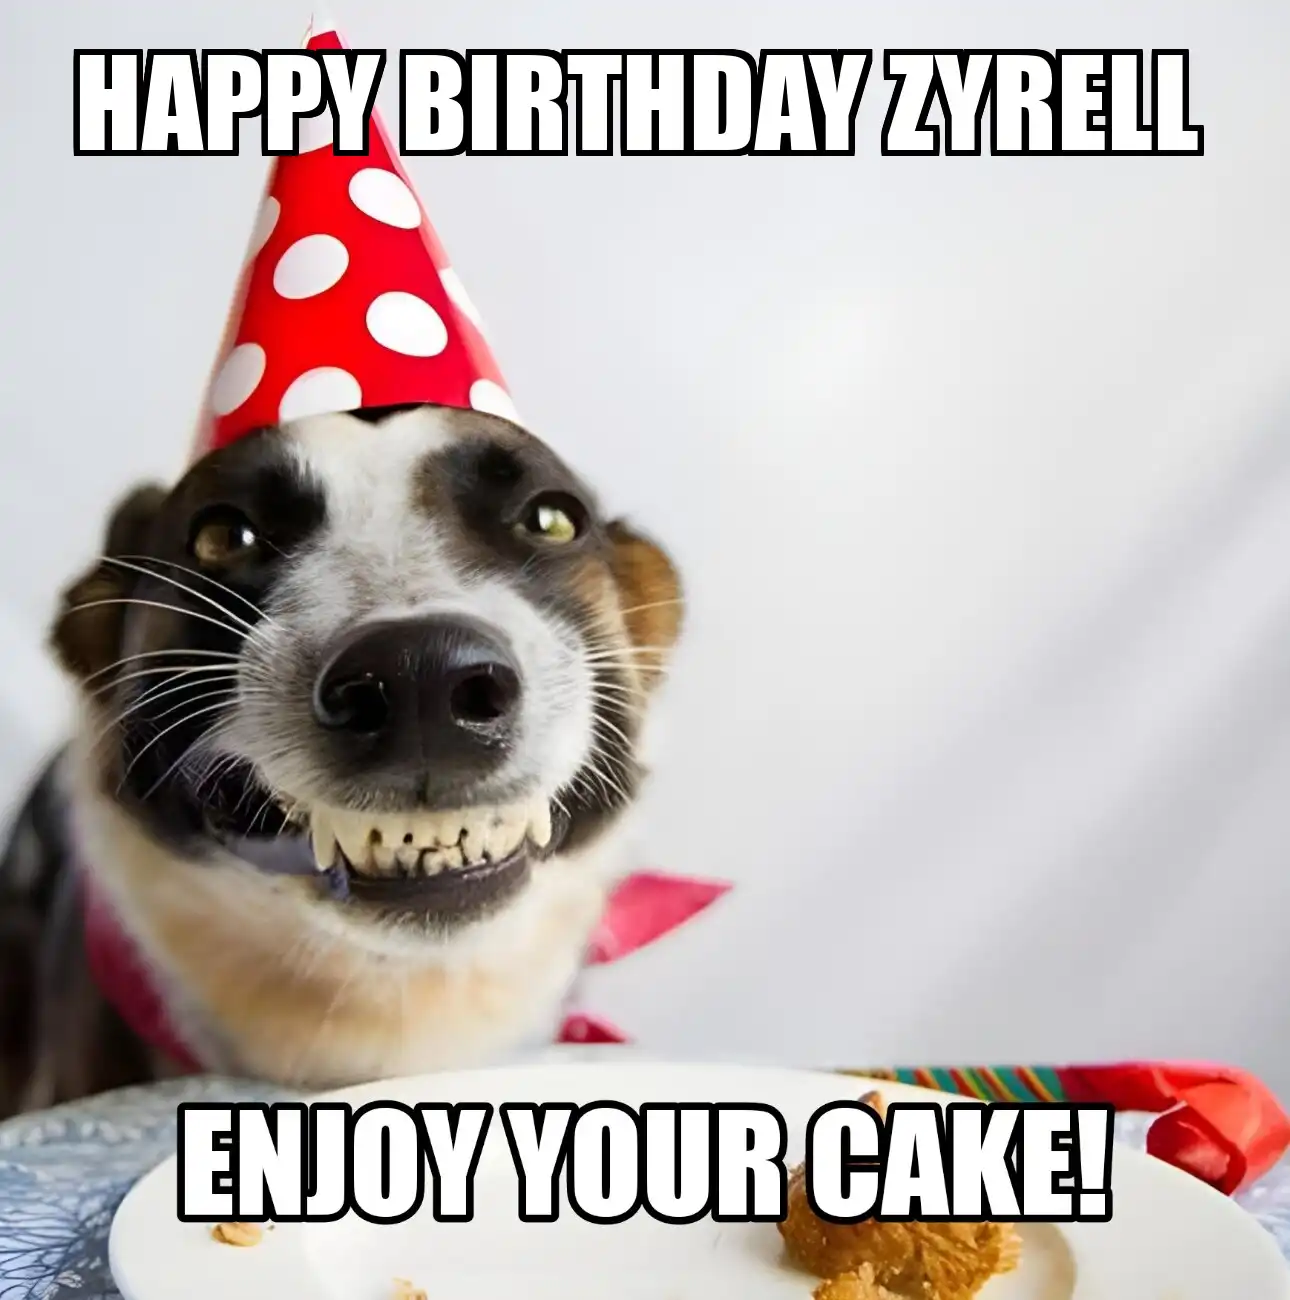 Happy Birthday Zyrell Enjoy Your Cake Dog Meme